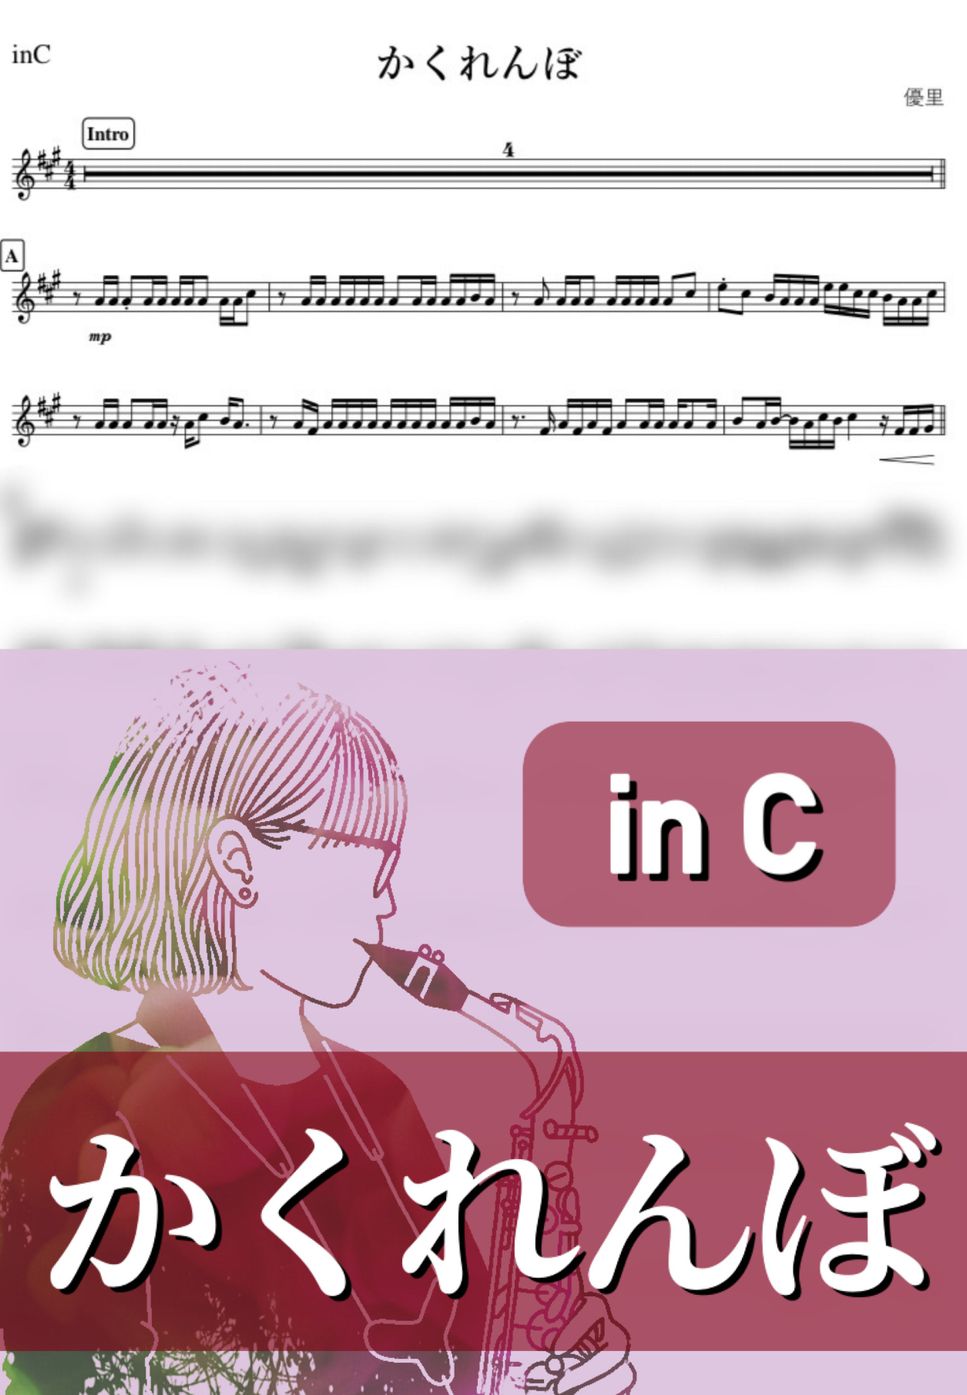 優里 - かくれんぼ (C) by kanamusic